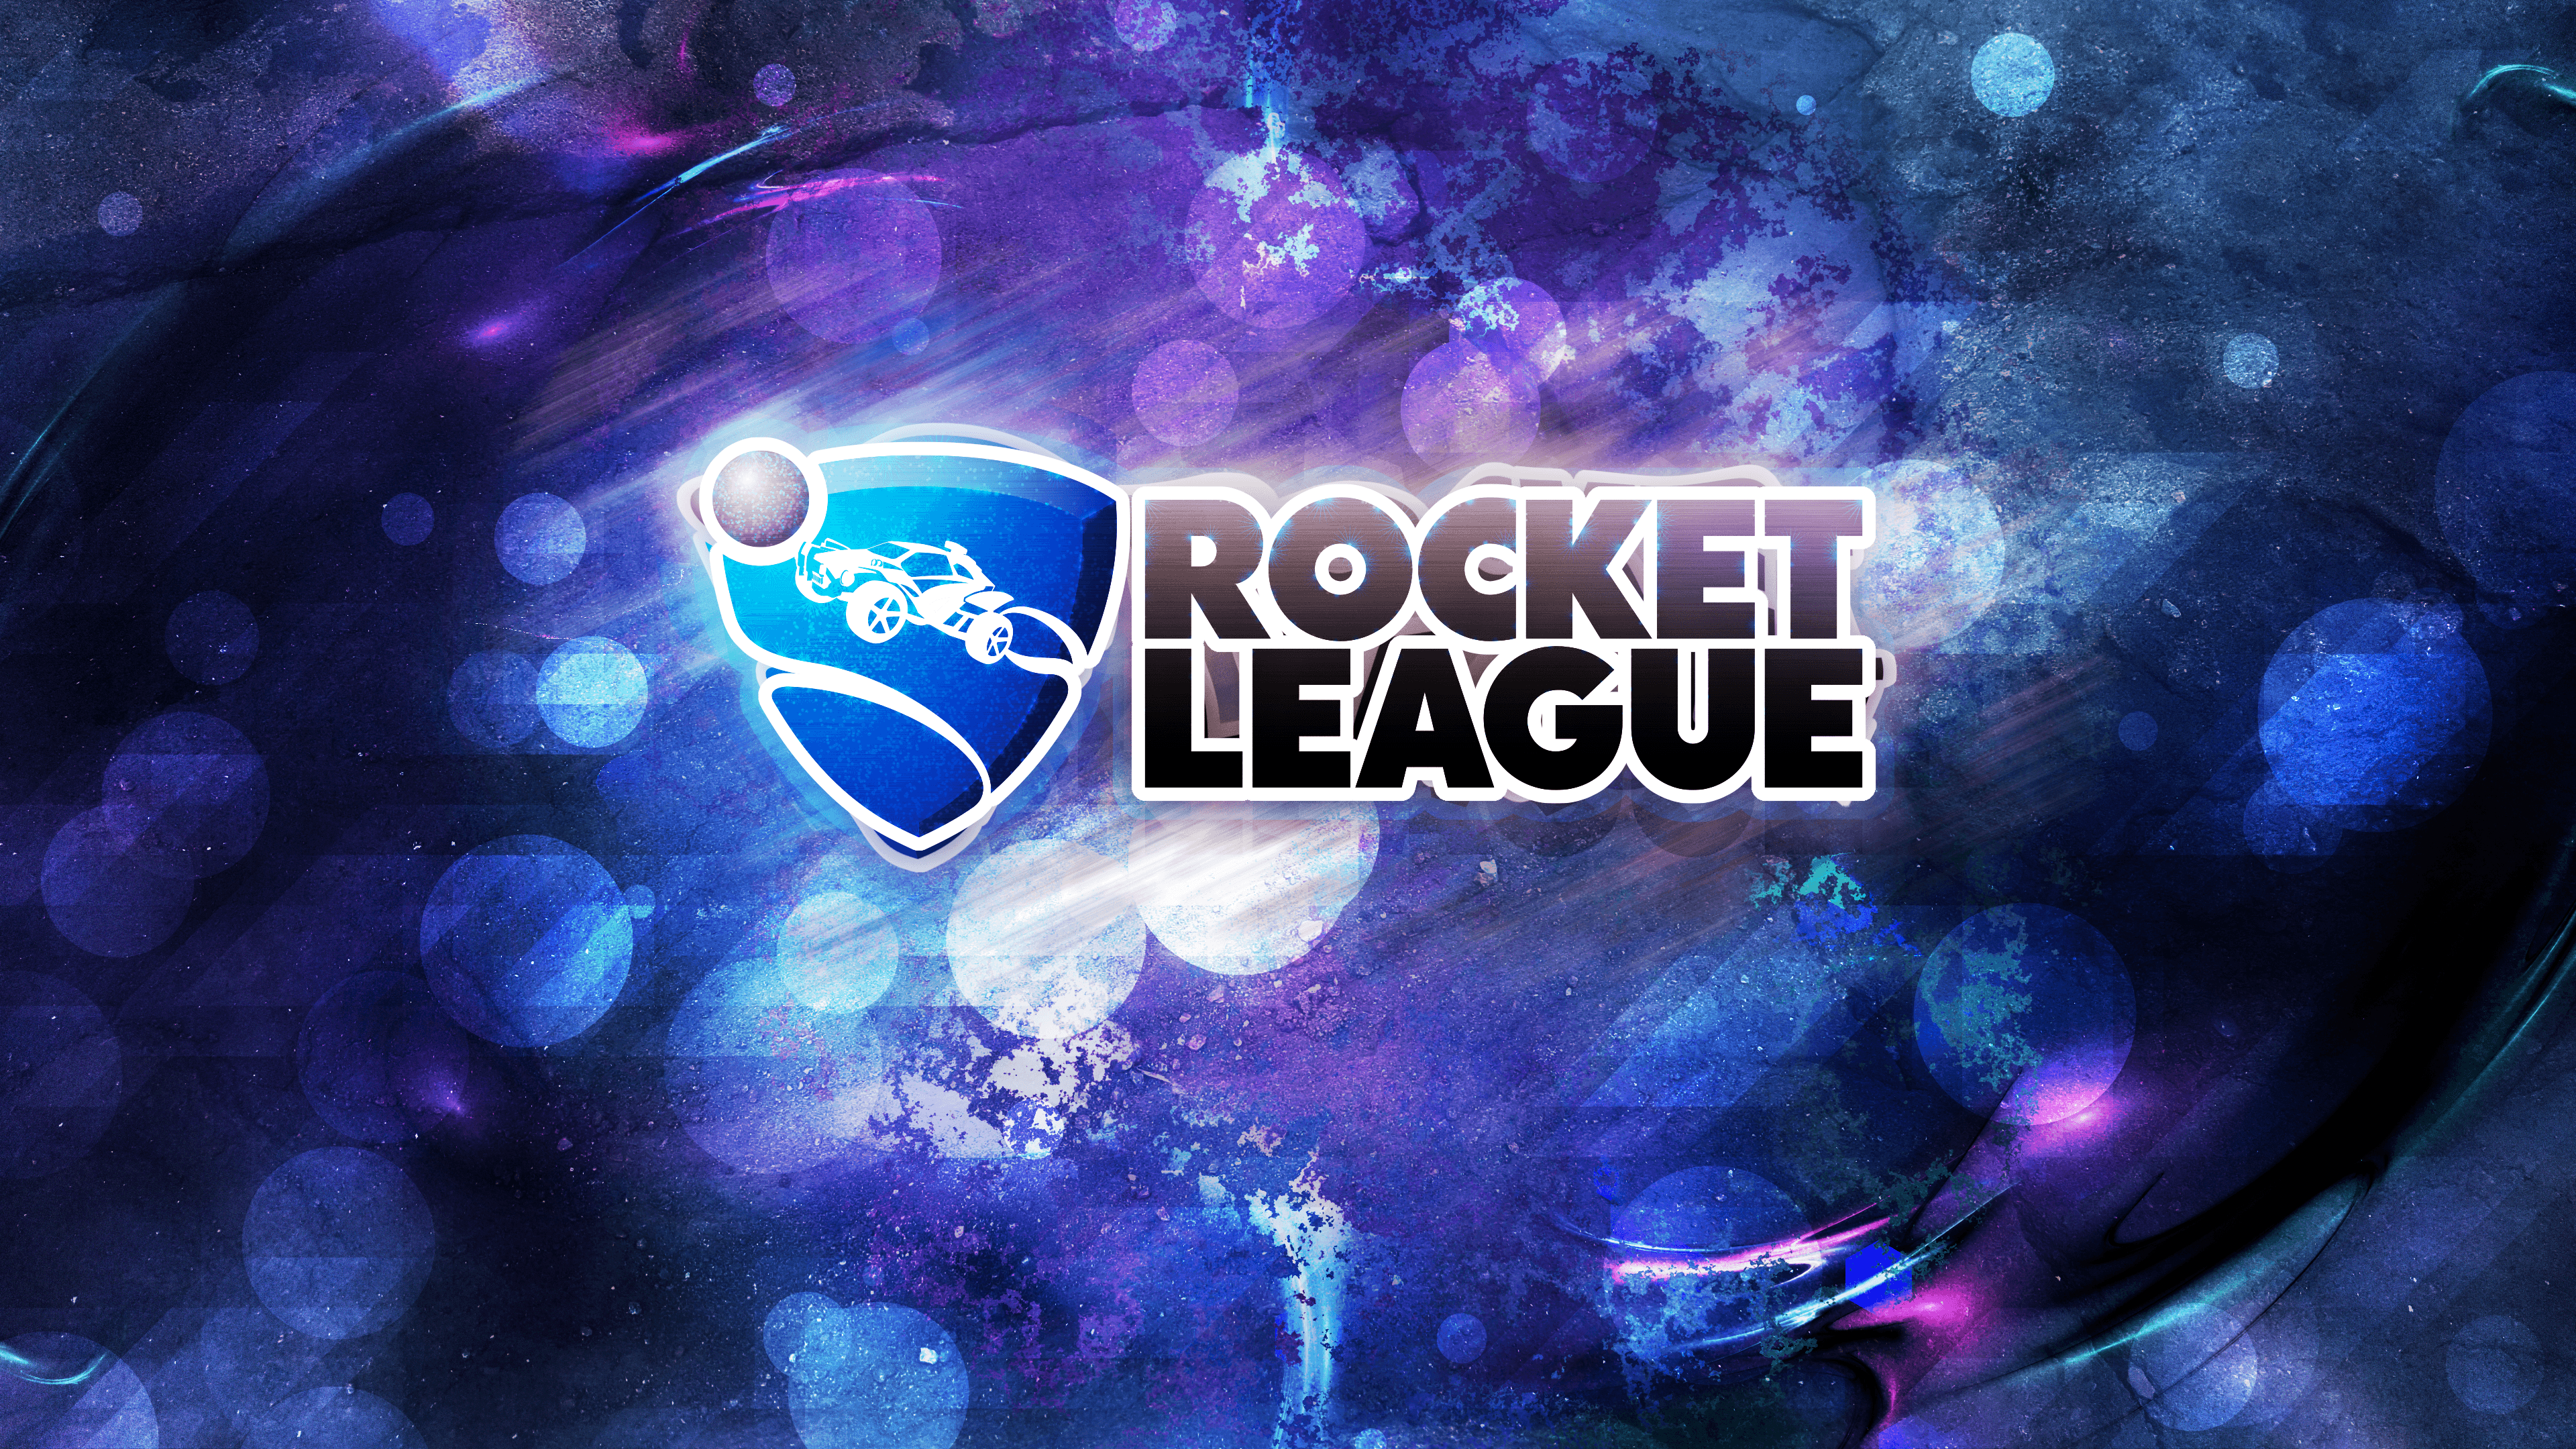 rocket league mobile background